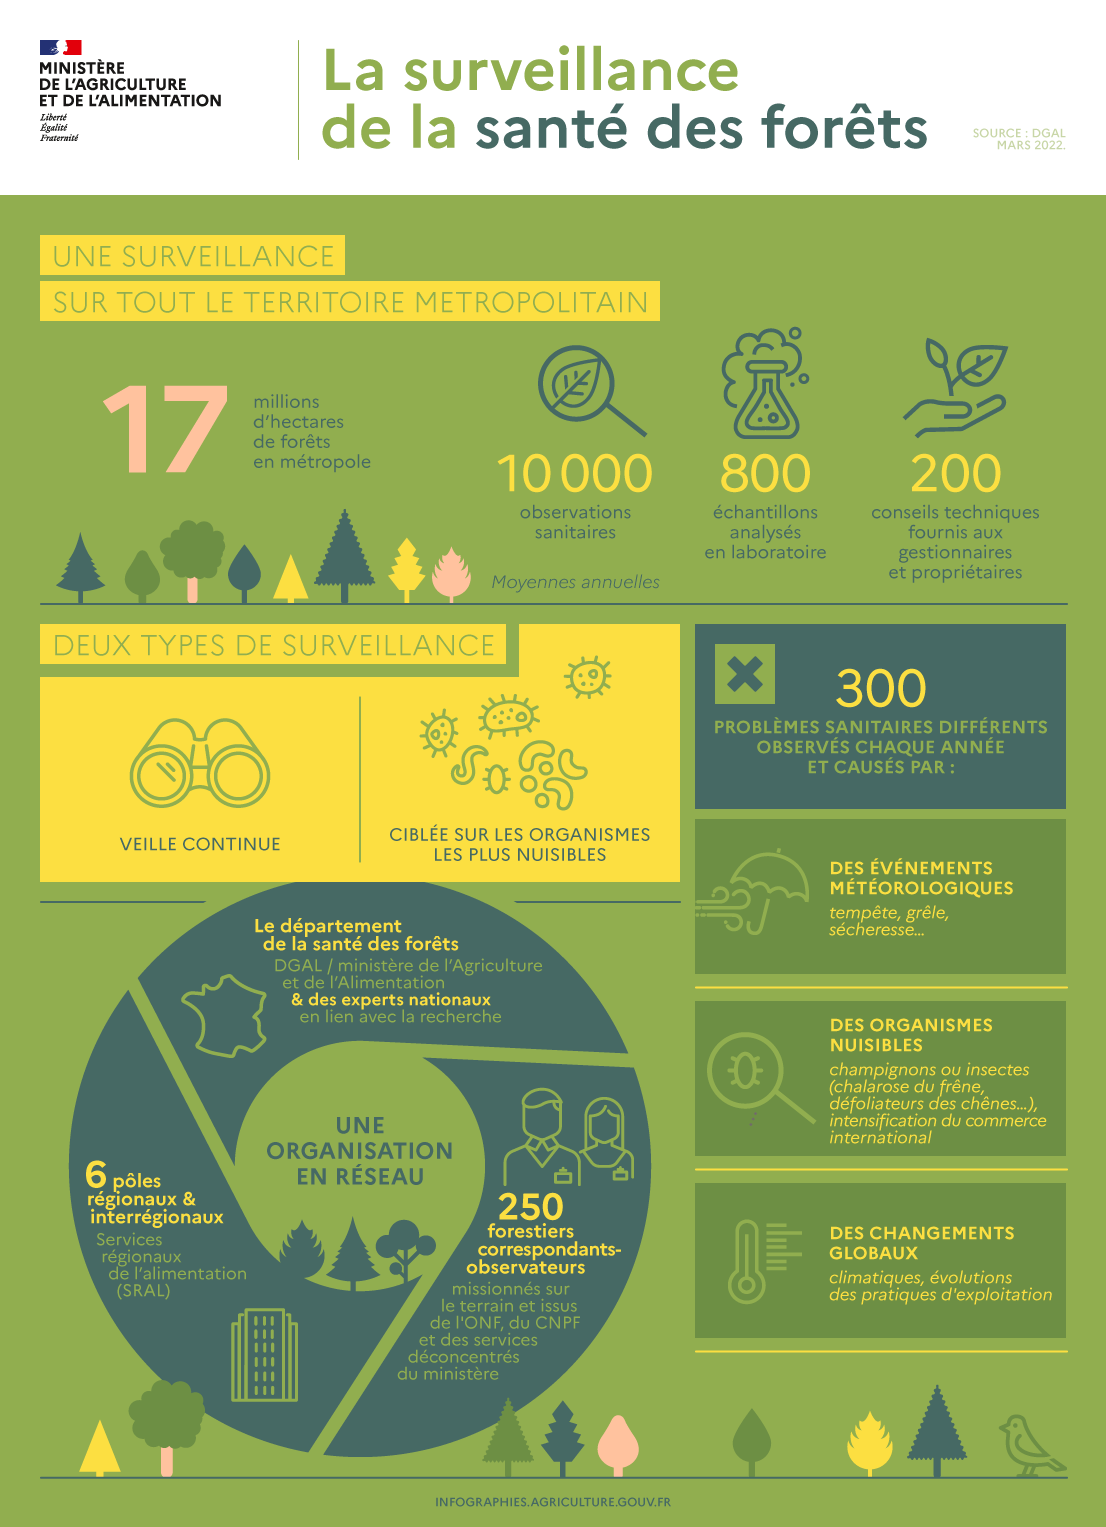 Infographie sur la suveillance de la santé des forêts